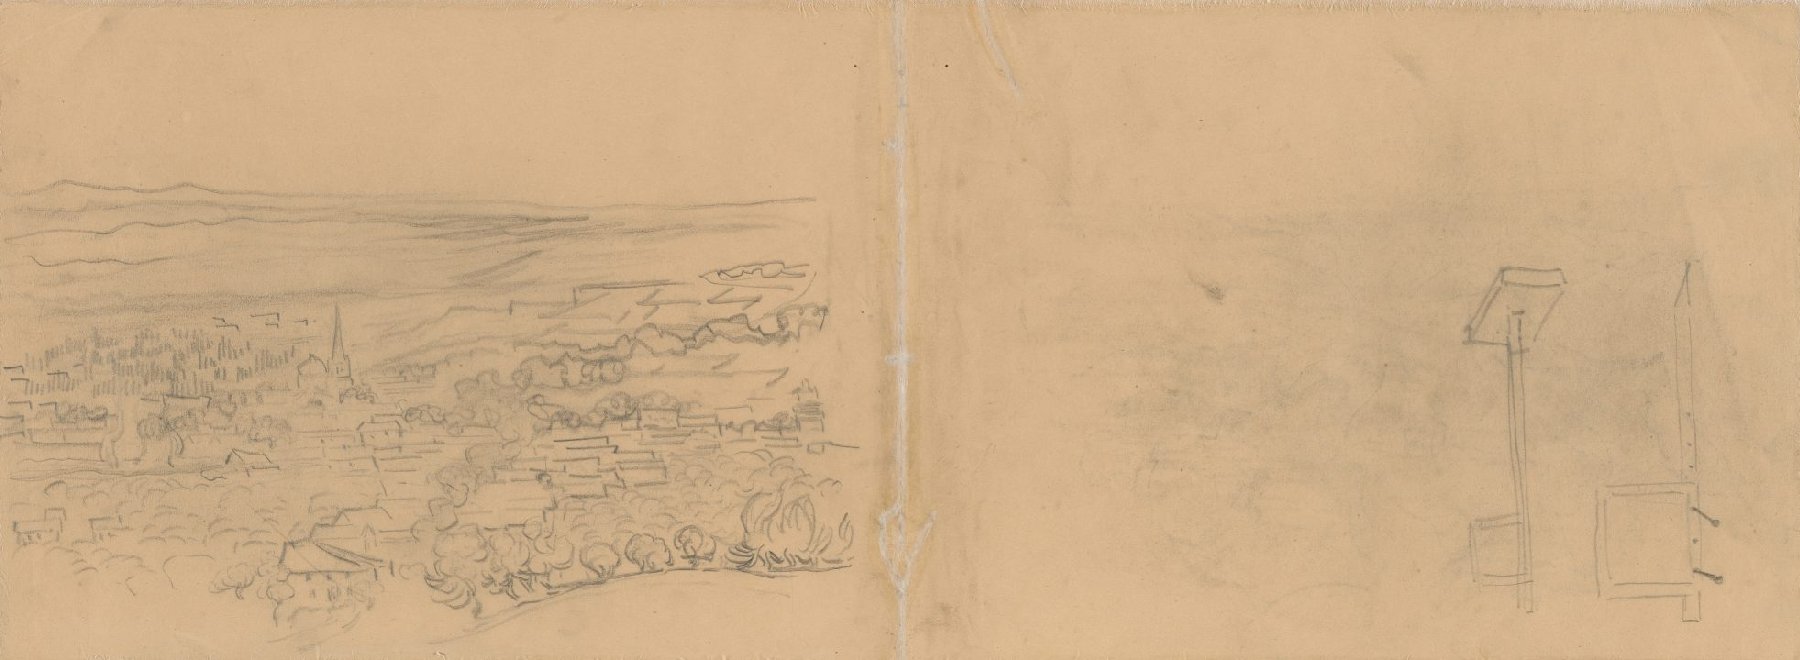 Gezicht op Saint-Rémy en schetsen van een perspectiefraam Vincent van Gogh (1853 - 1890), Saint-Rémy-de-Provence, mei-juni 1889